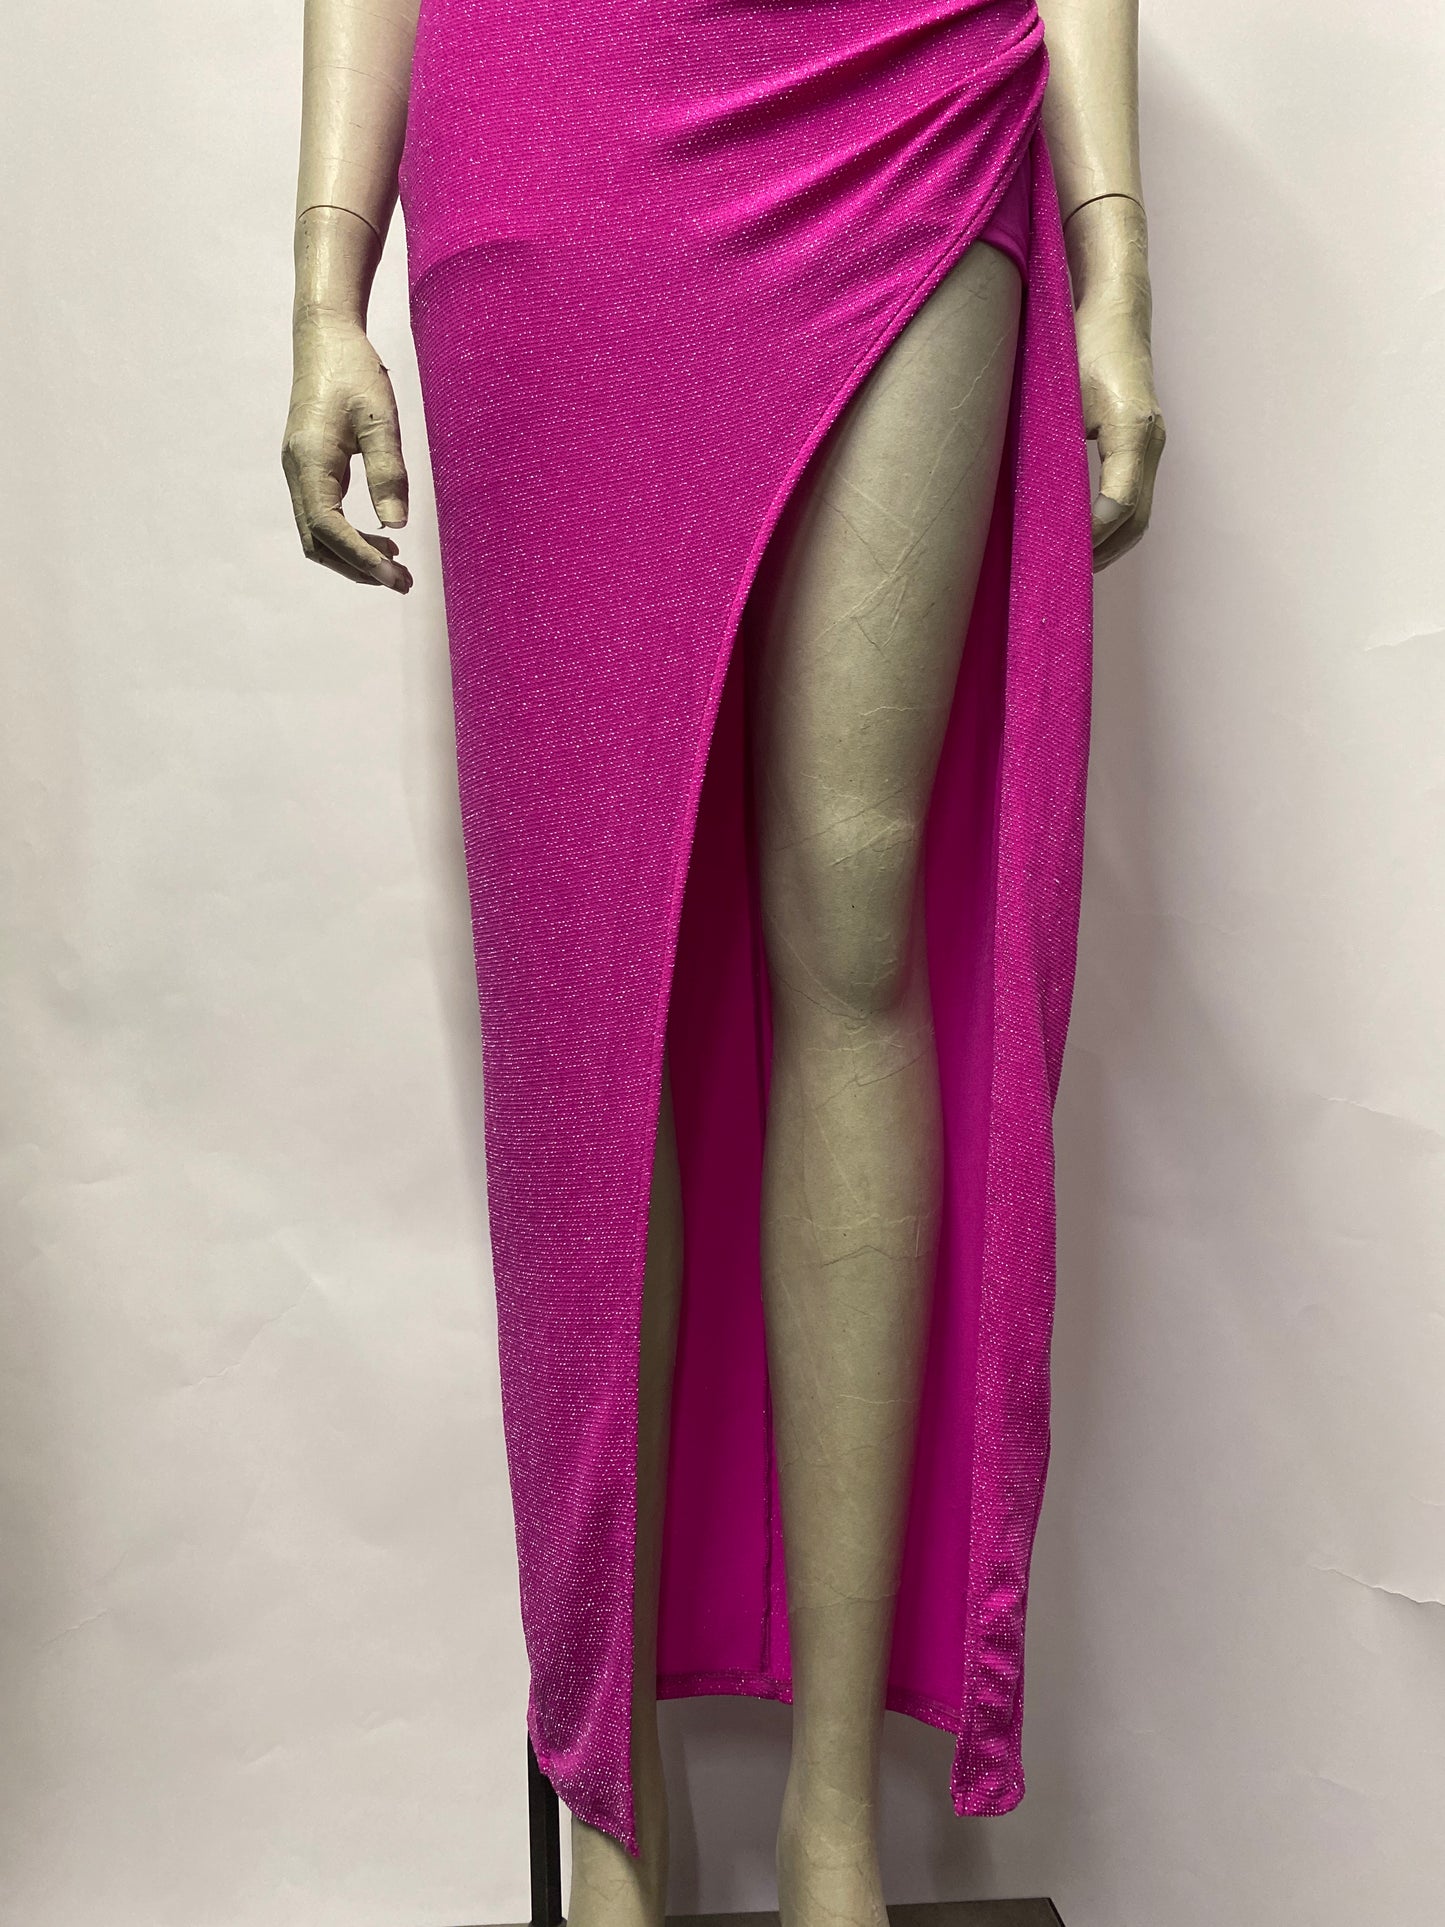 NBD at Revolve Pink Glitter Spaghetti Strap Ruched Midi Dress Extra Small BNWT